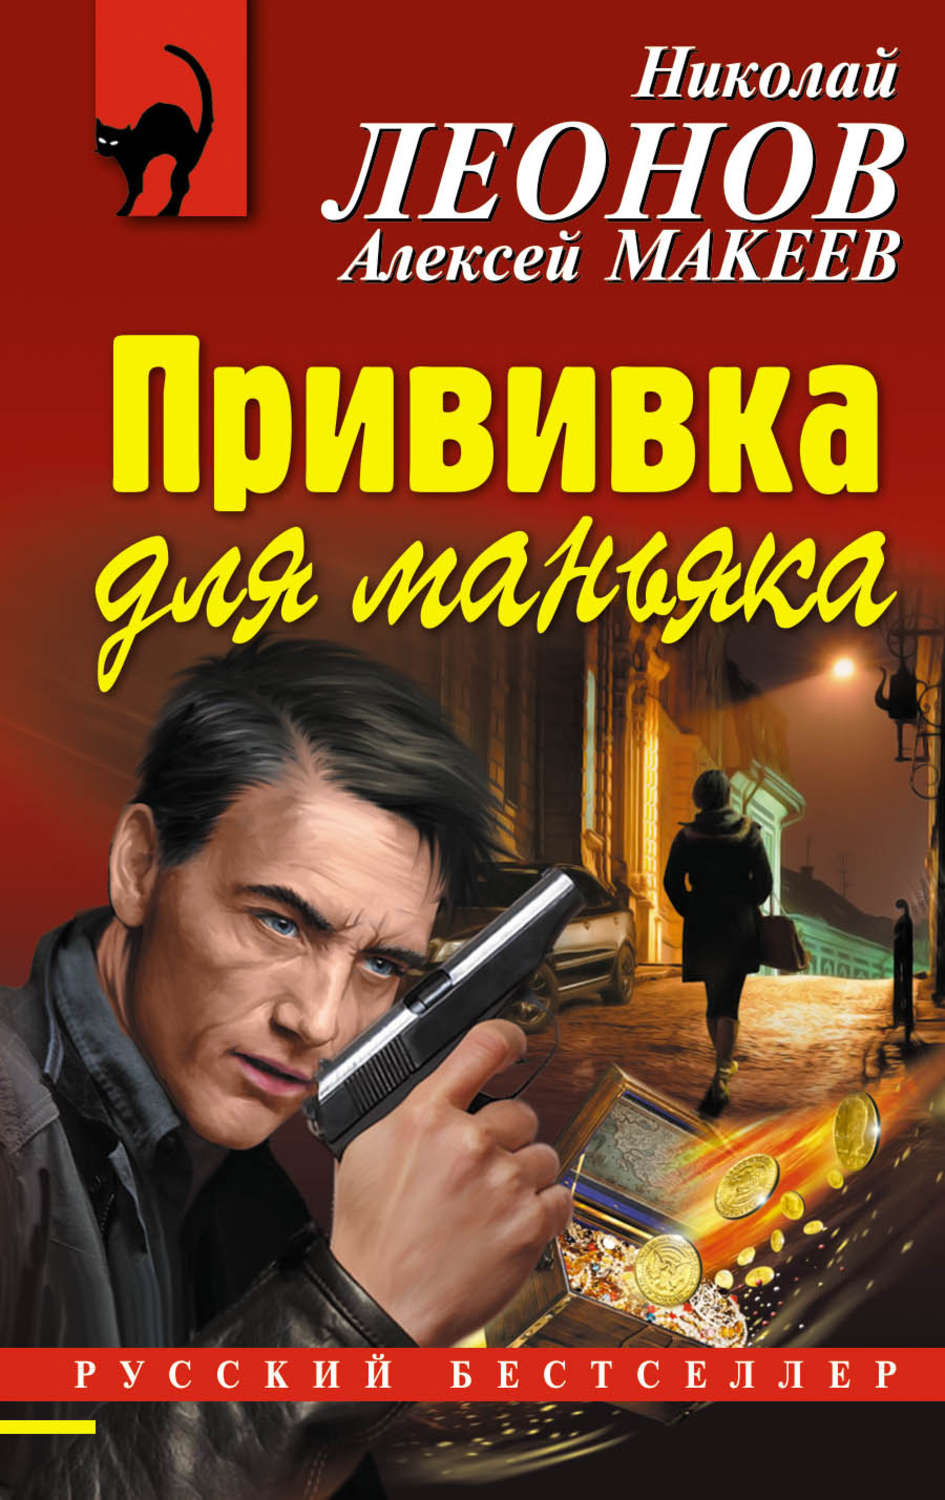 Писатели детективного жанра. Детективы книги. Российские детективы книги. Русские детективы книги авторы. Интересные книги детективы.